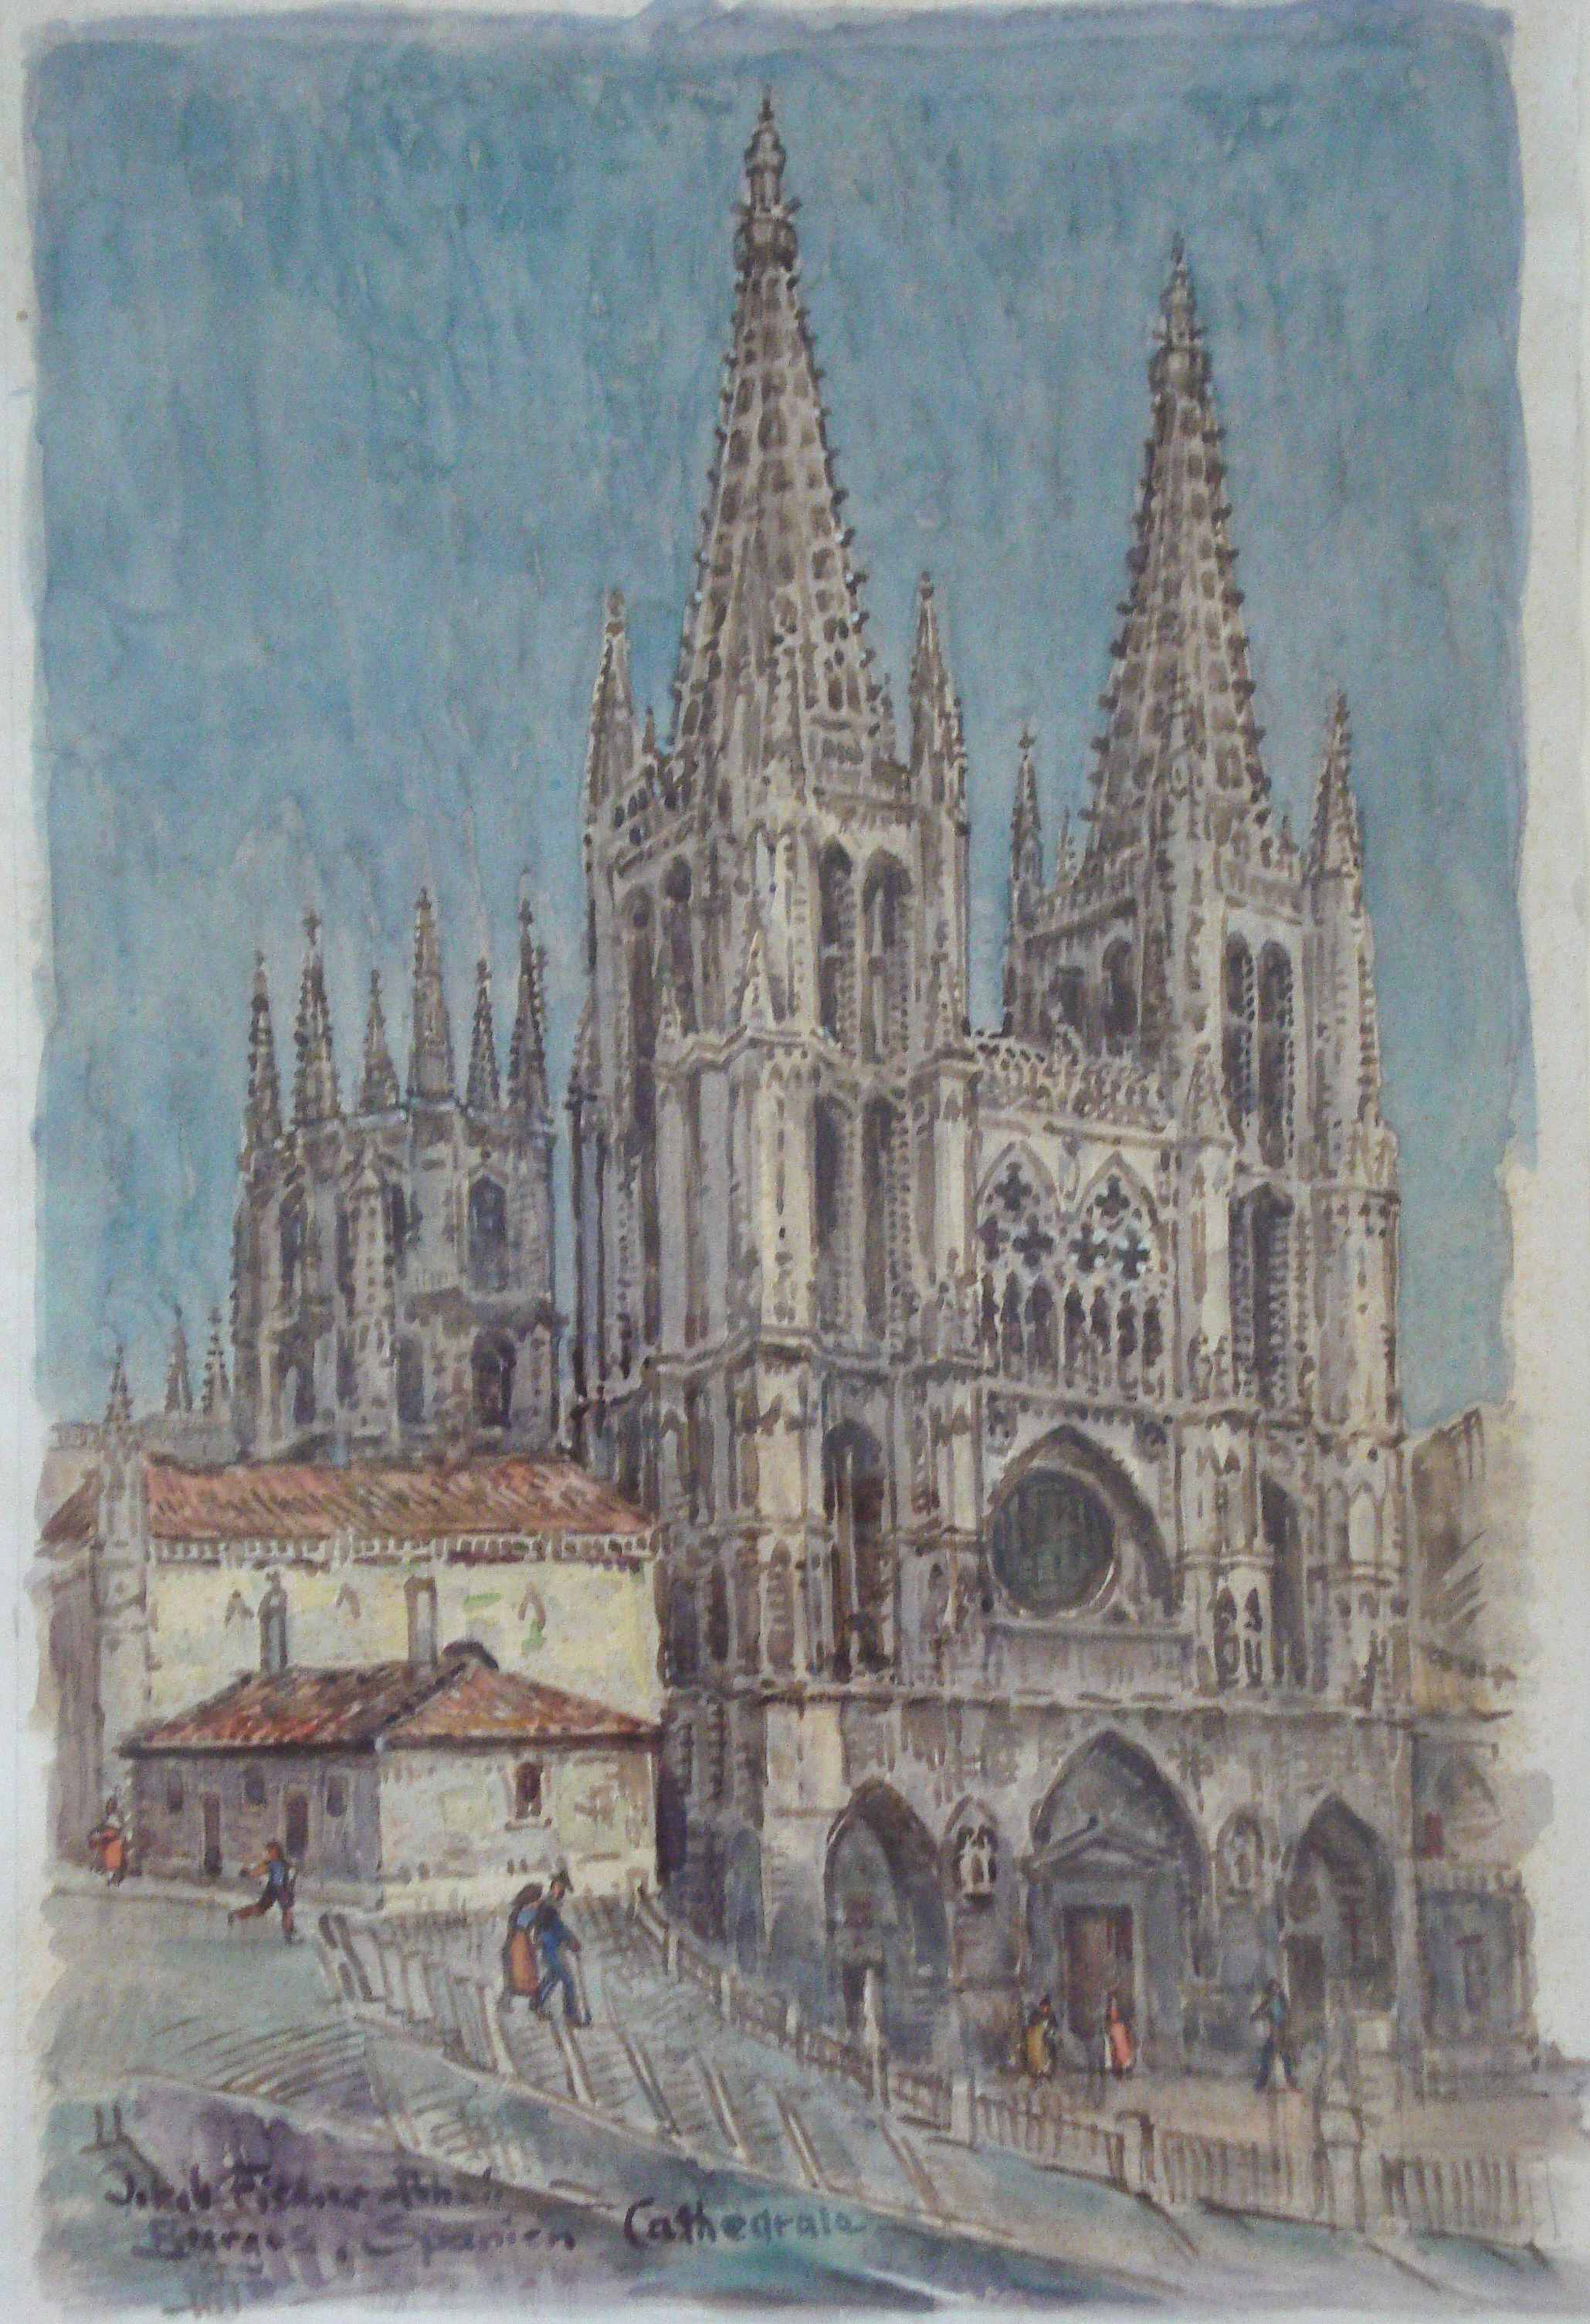 Burgos, Spanien, Cathedrale, ohne Jahr, für vergrößerte Ansicht anklicken!